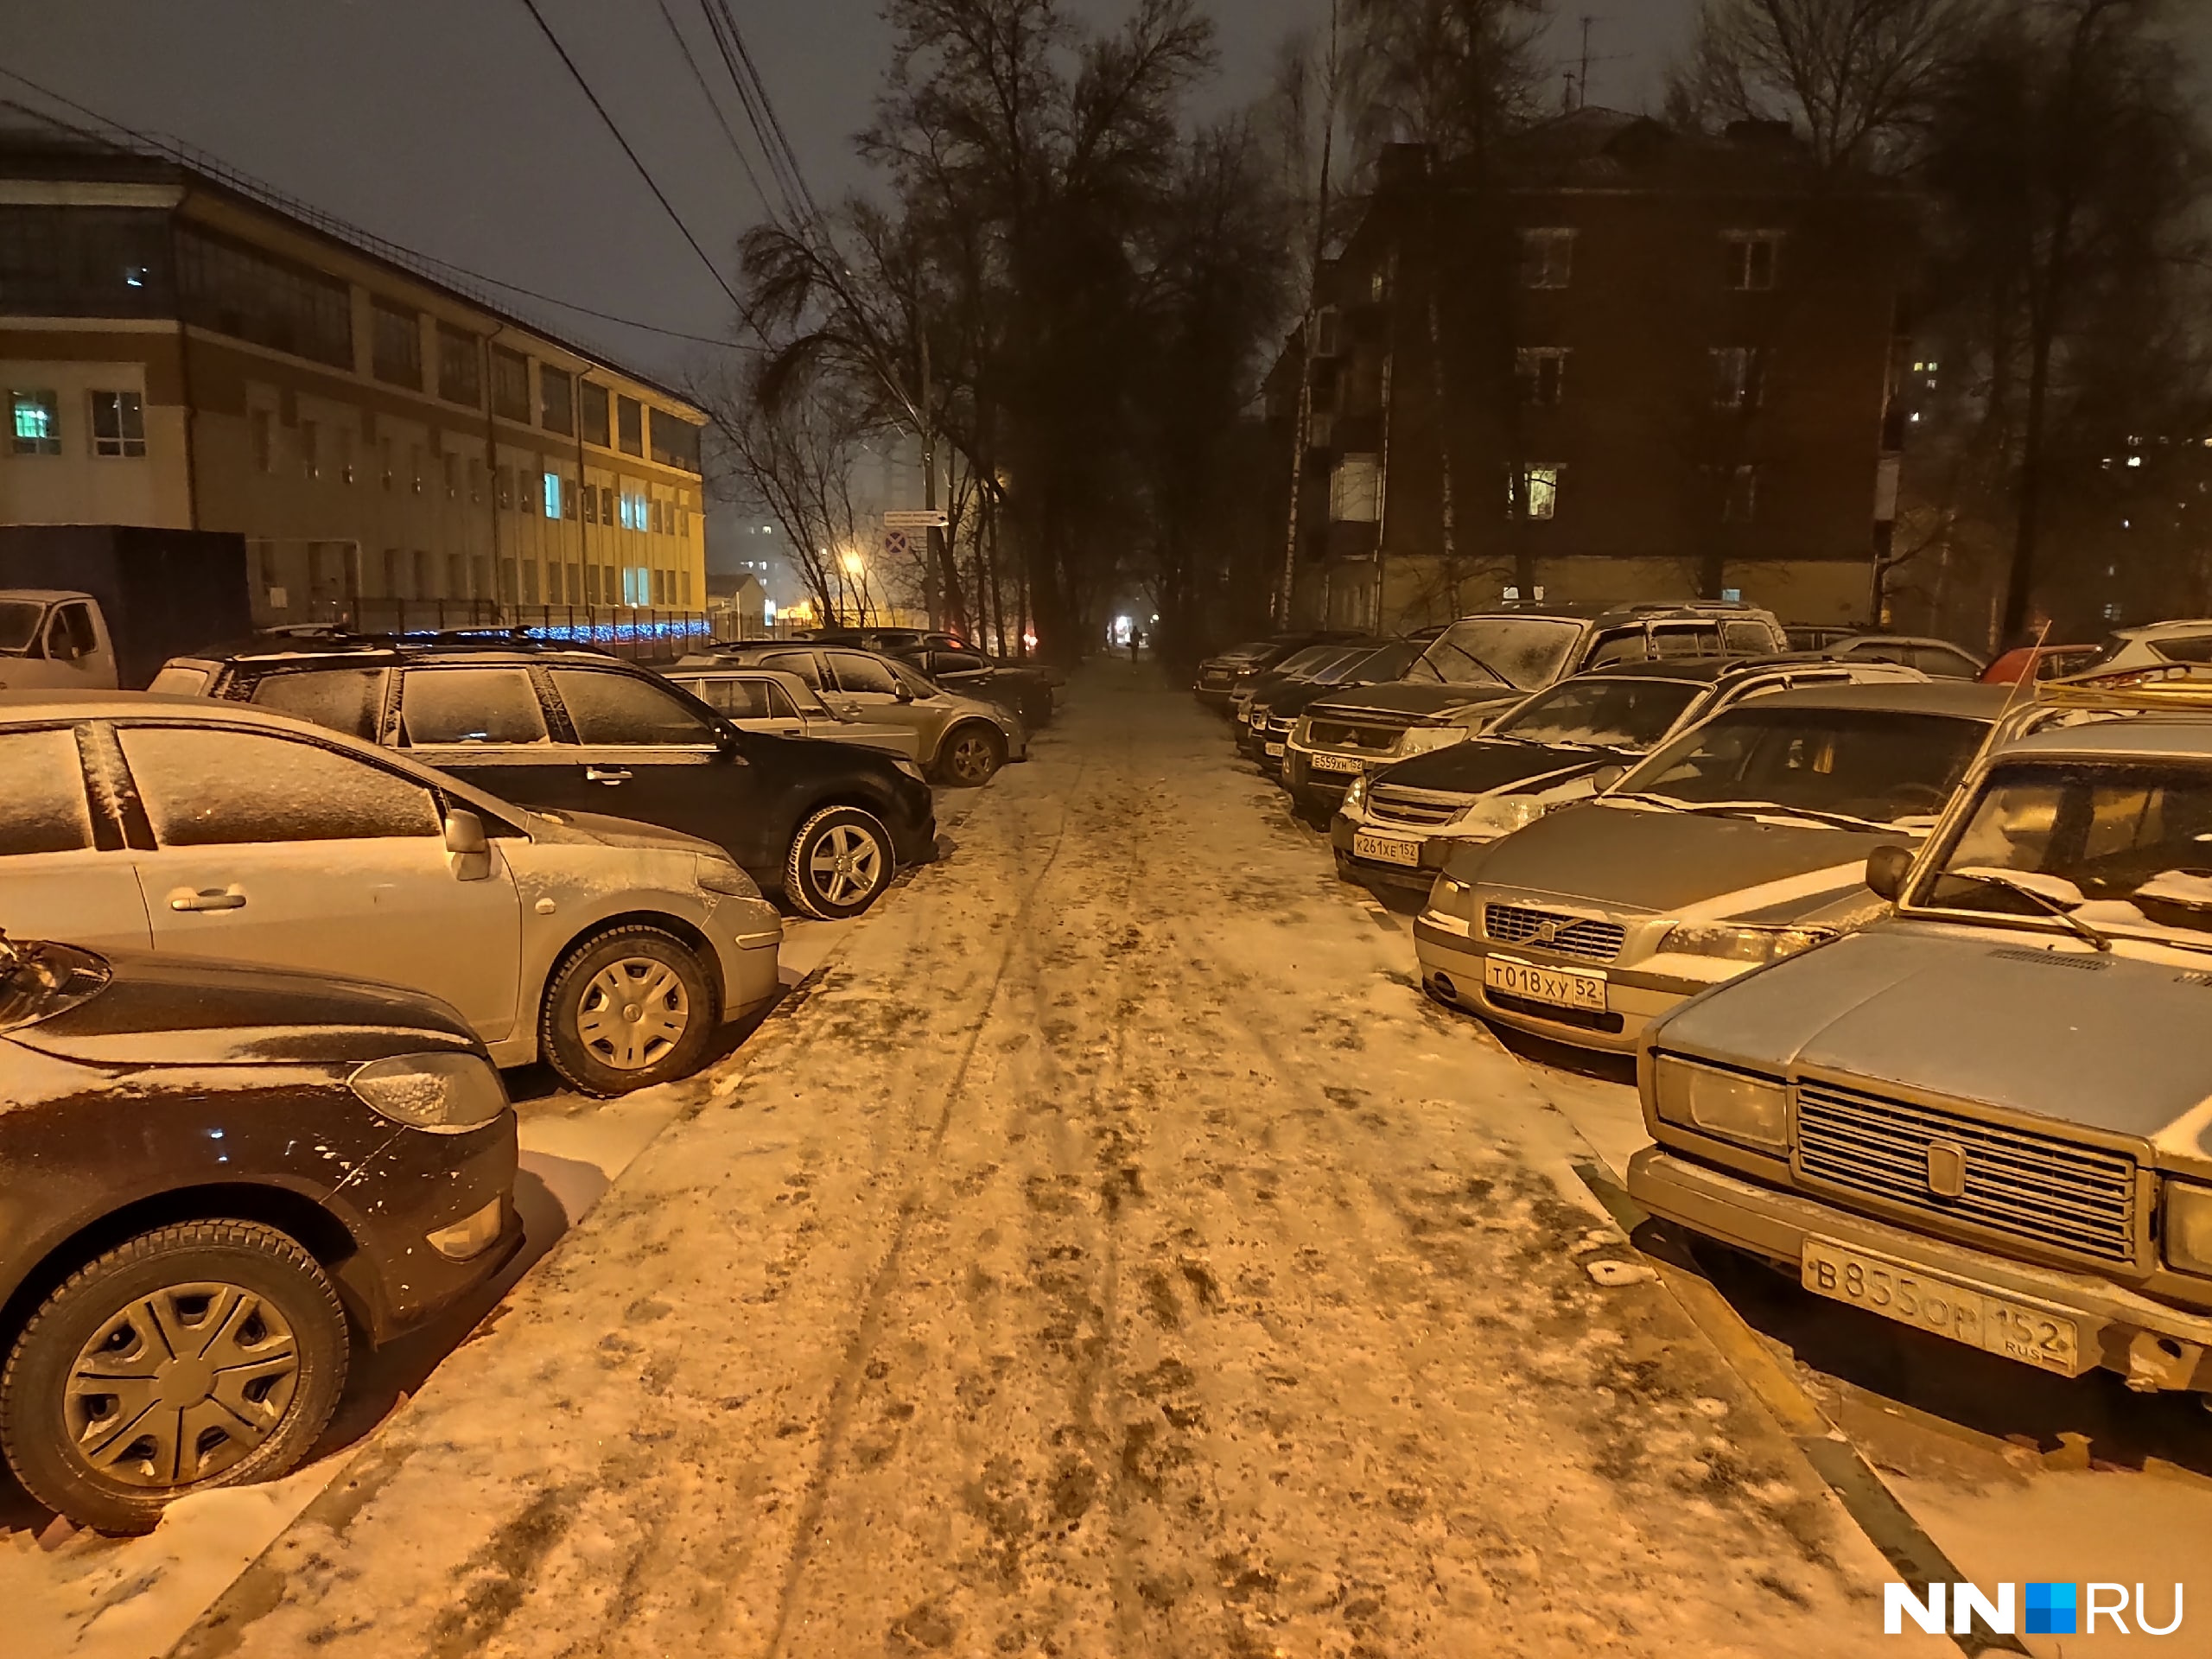 Припаркованные авто припорошило последним снегом в году<br><br>